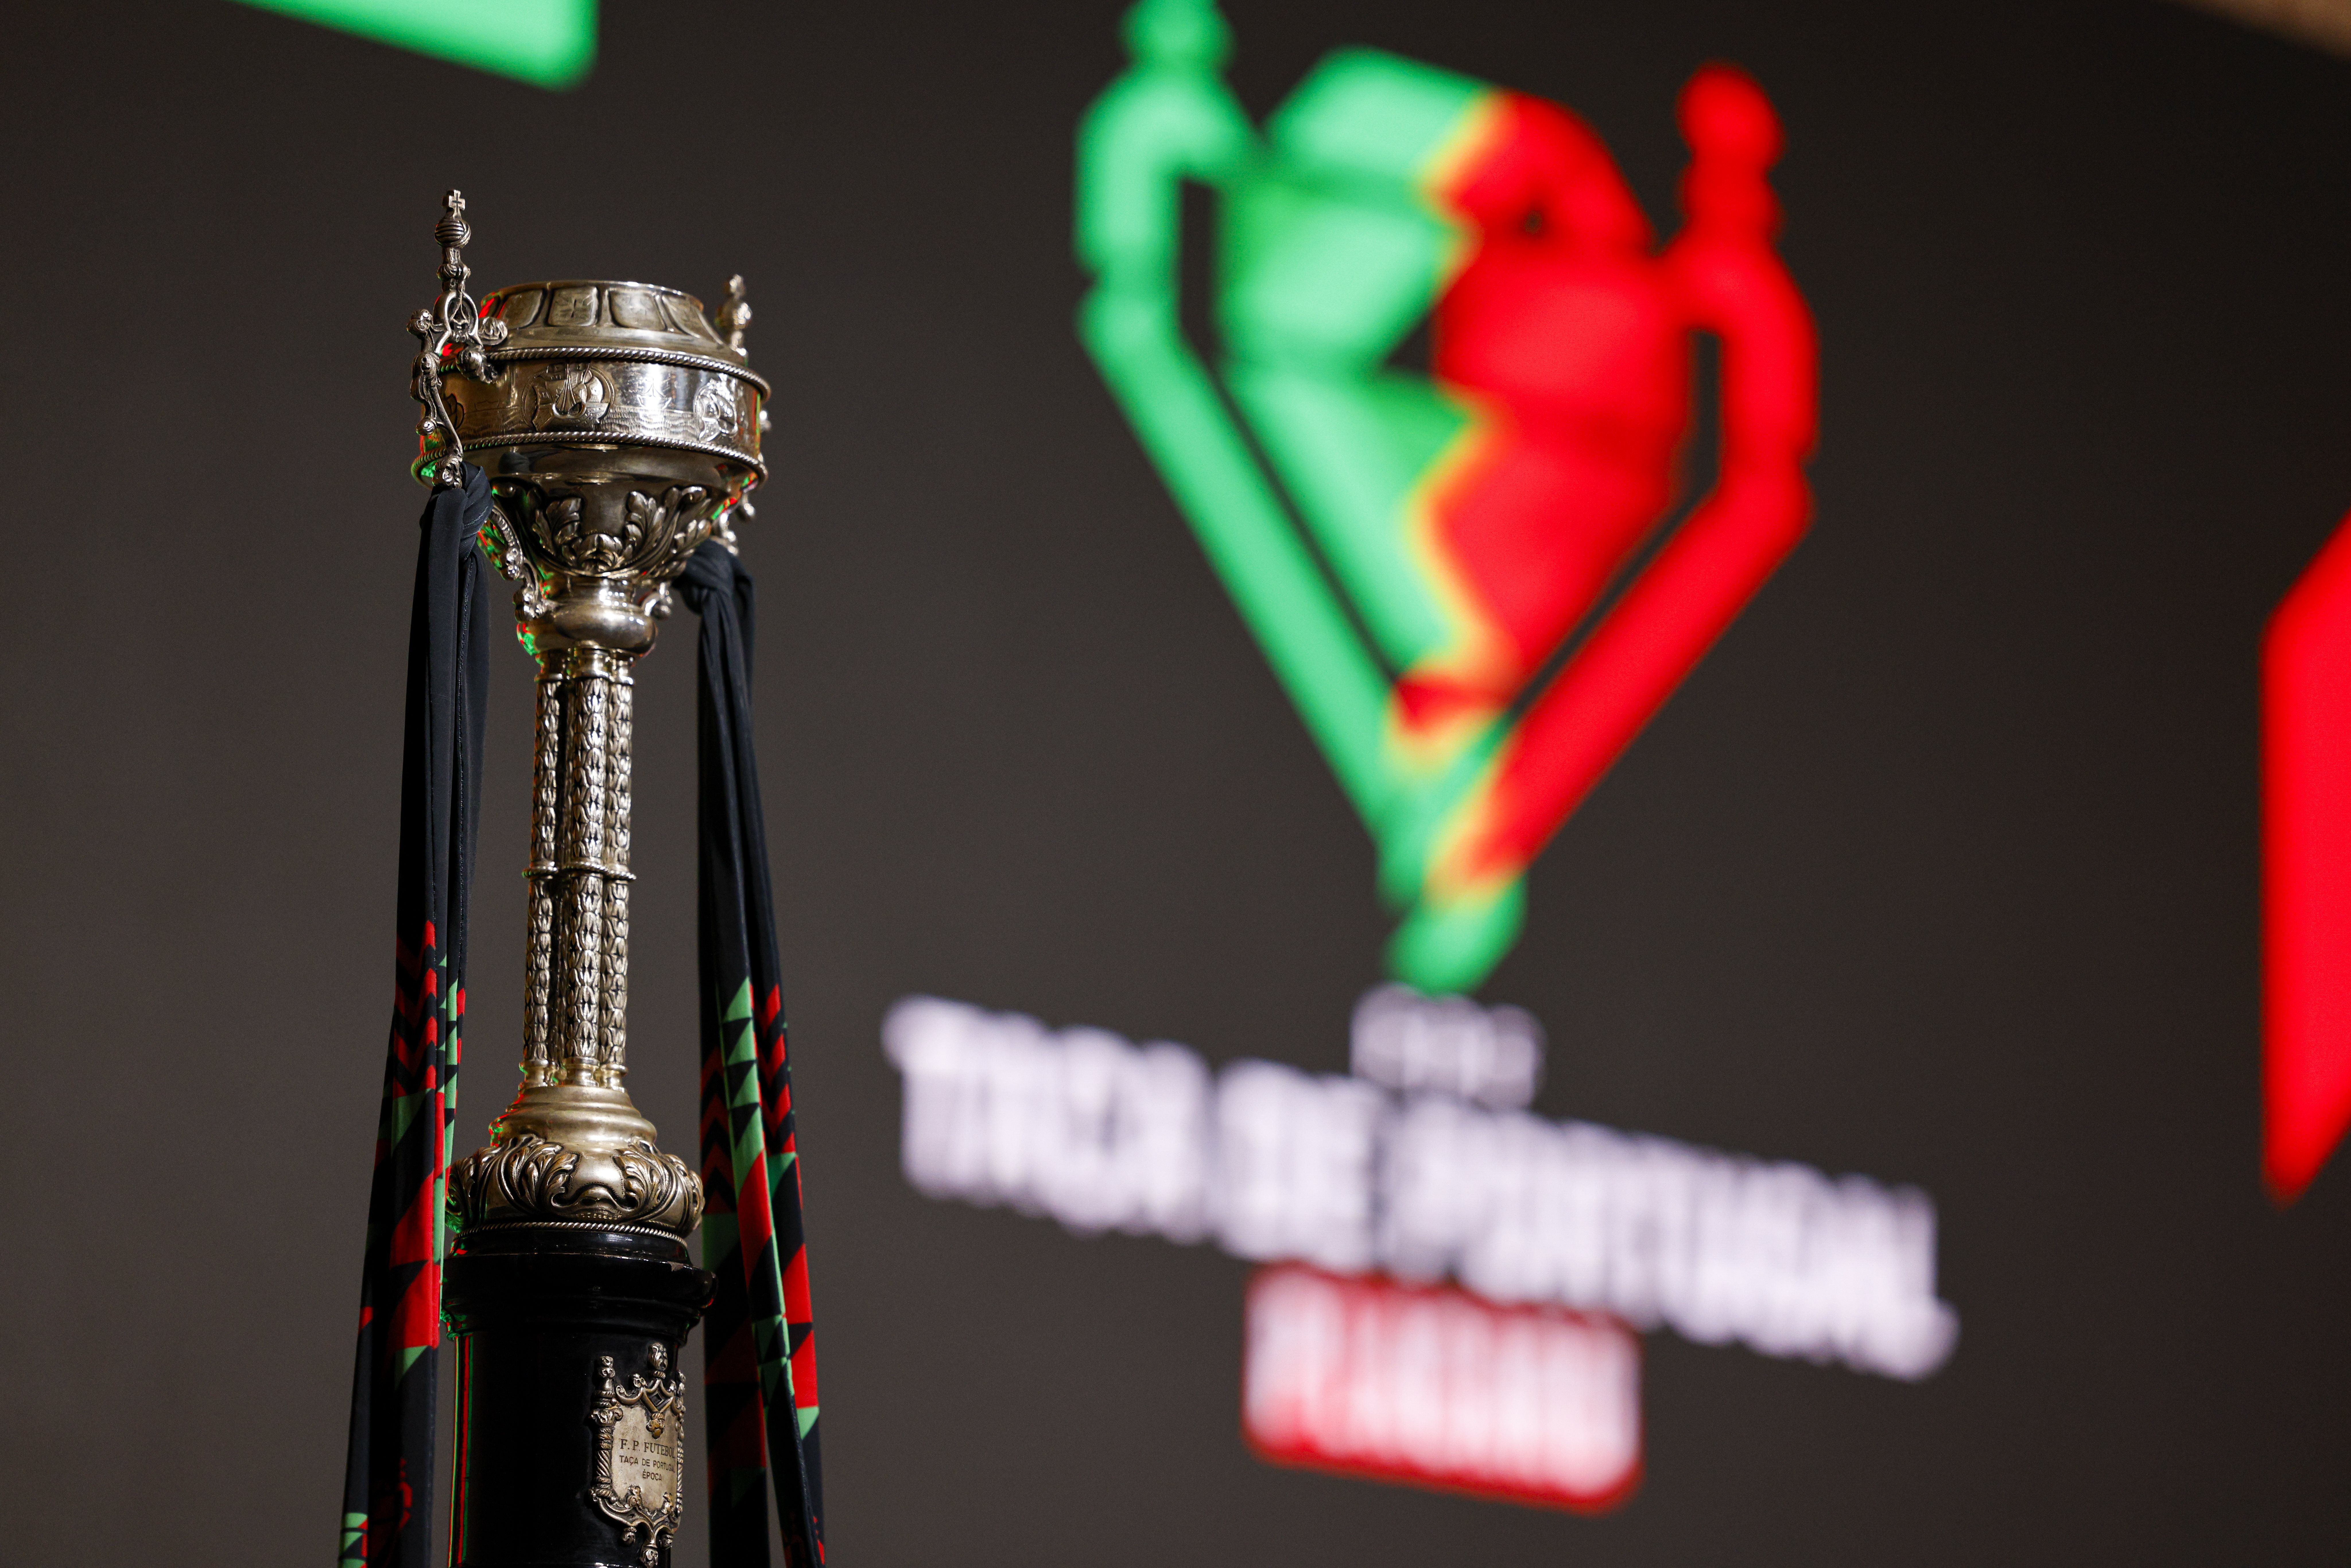 Conhecidos os jogos da 1ª e 2ª eliminatórias da Taça de Portugal